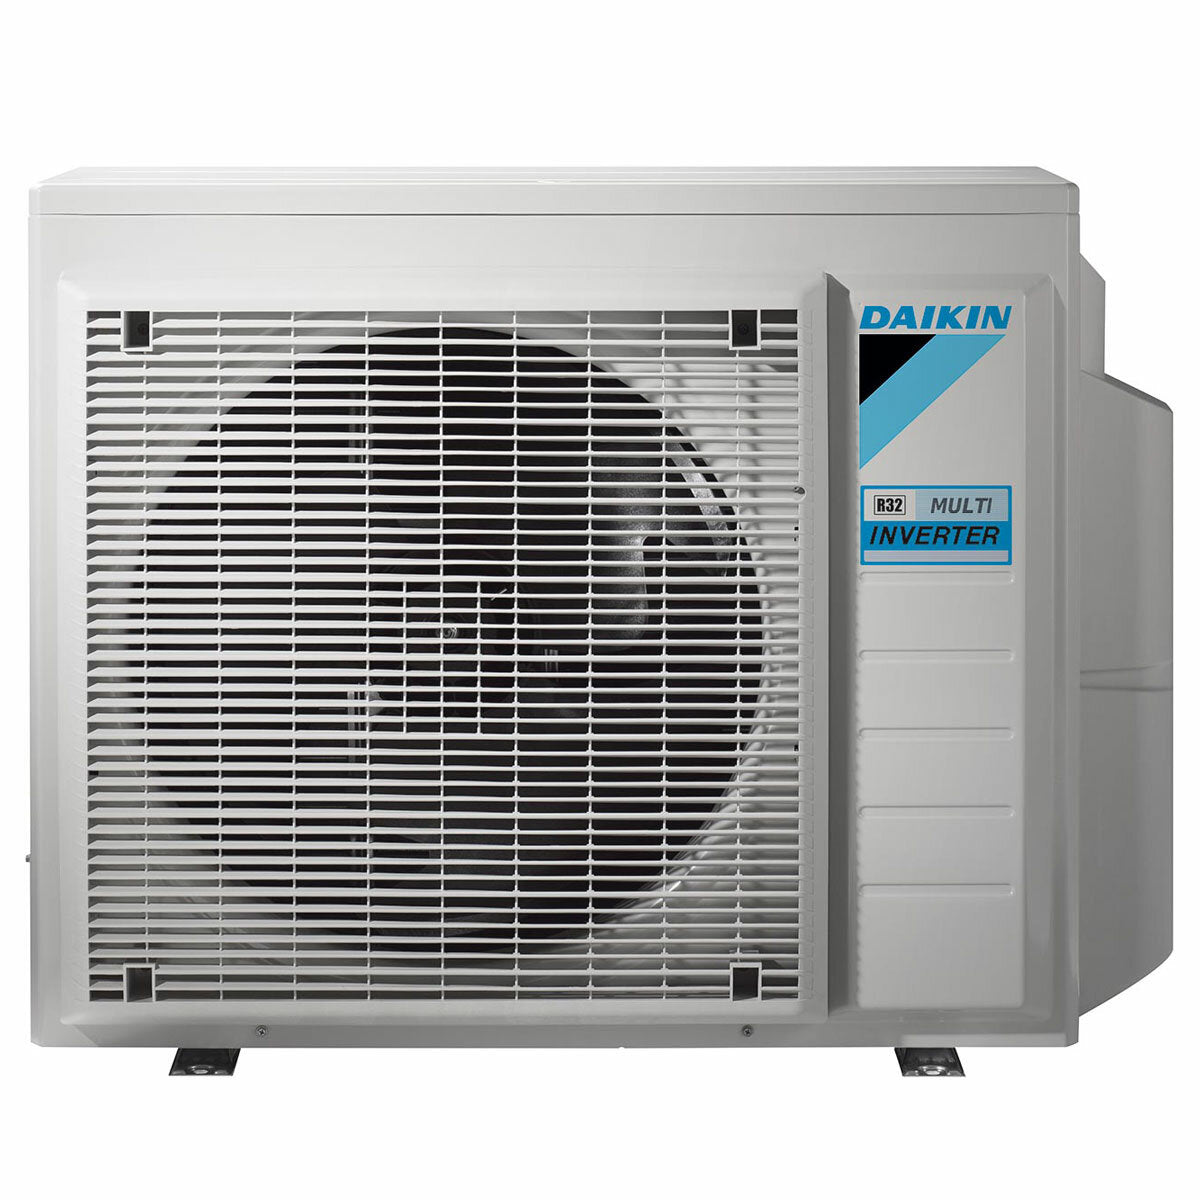 Daikin Emura air conditioner 3 split panels 9000+12000+12000+18000 BTU inverter A++ wifi outdoor unit 7.4 kW White